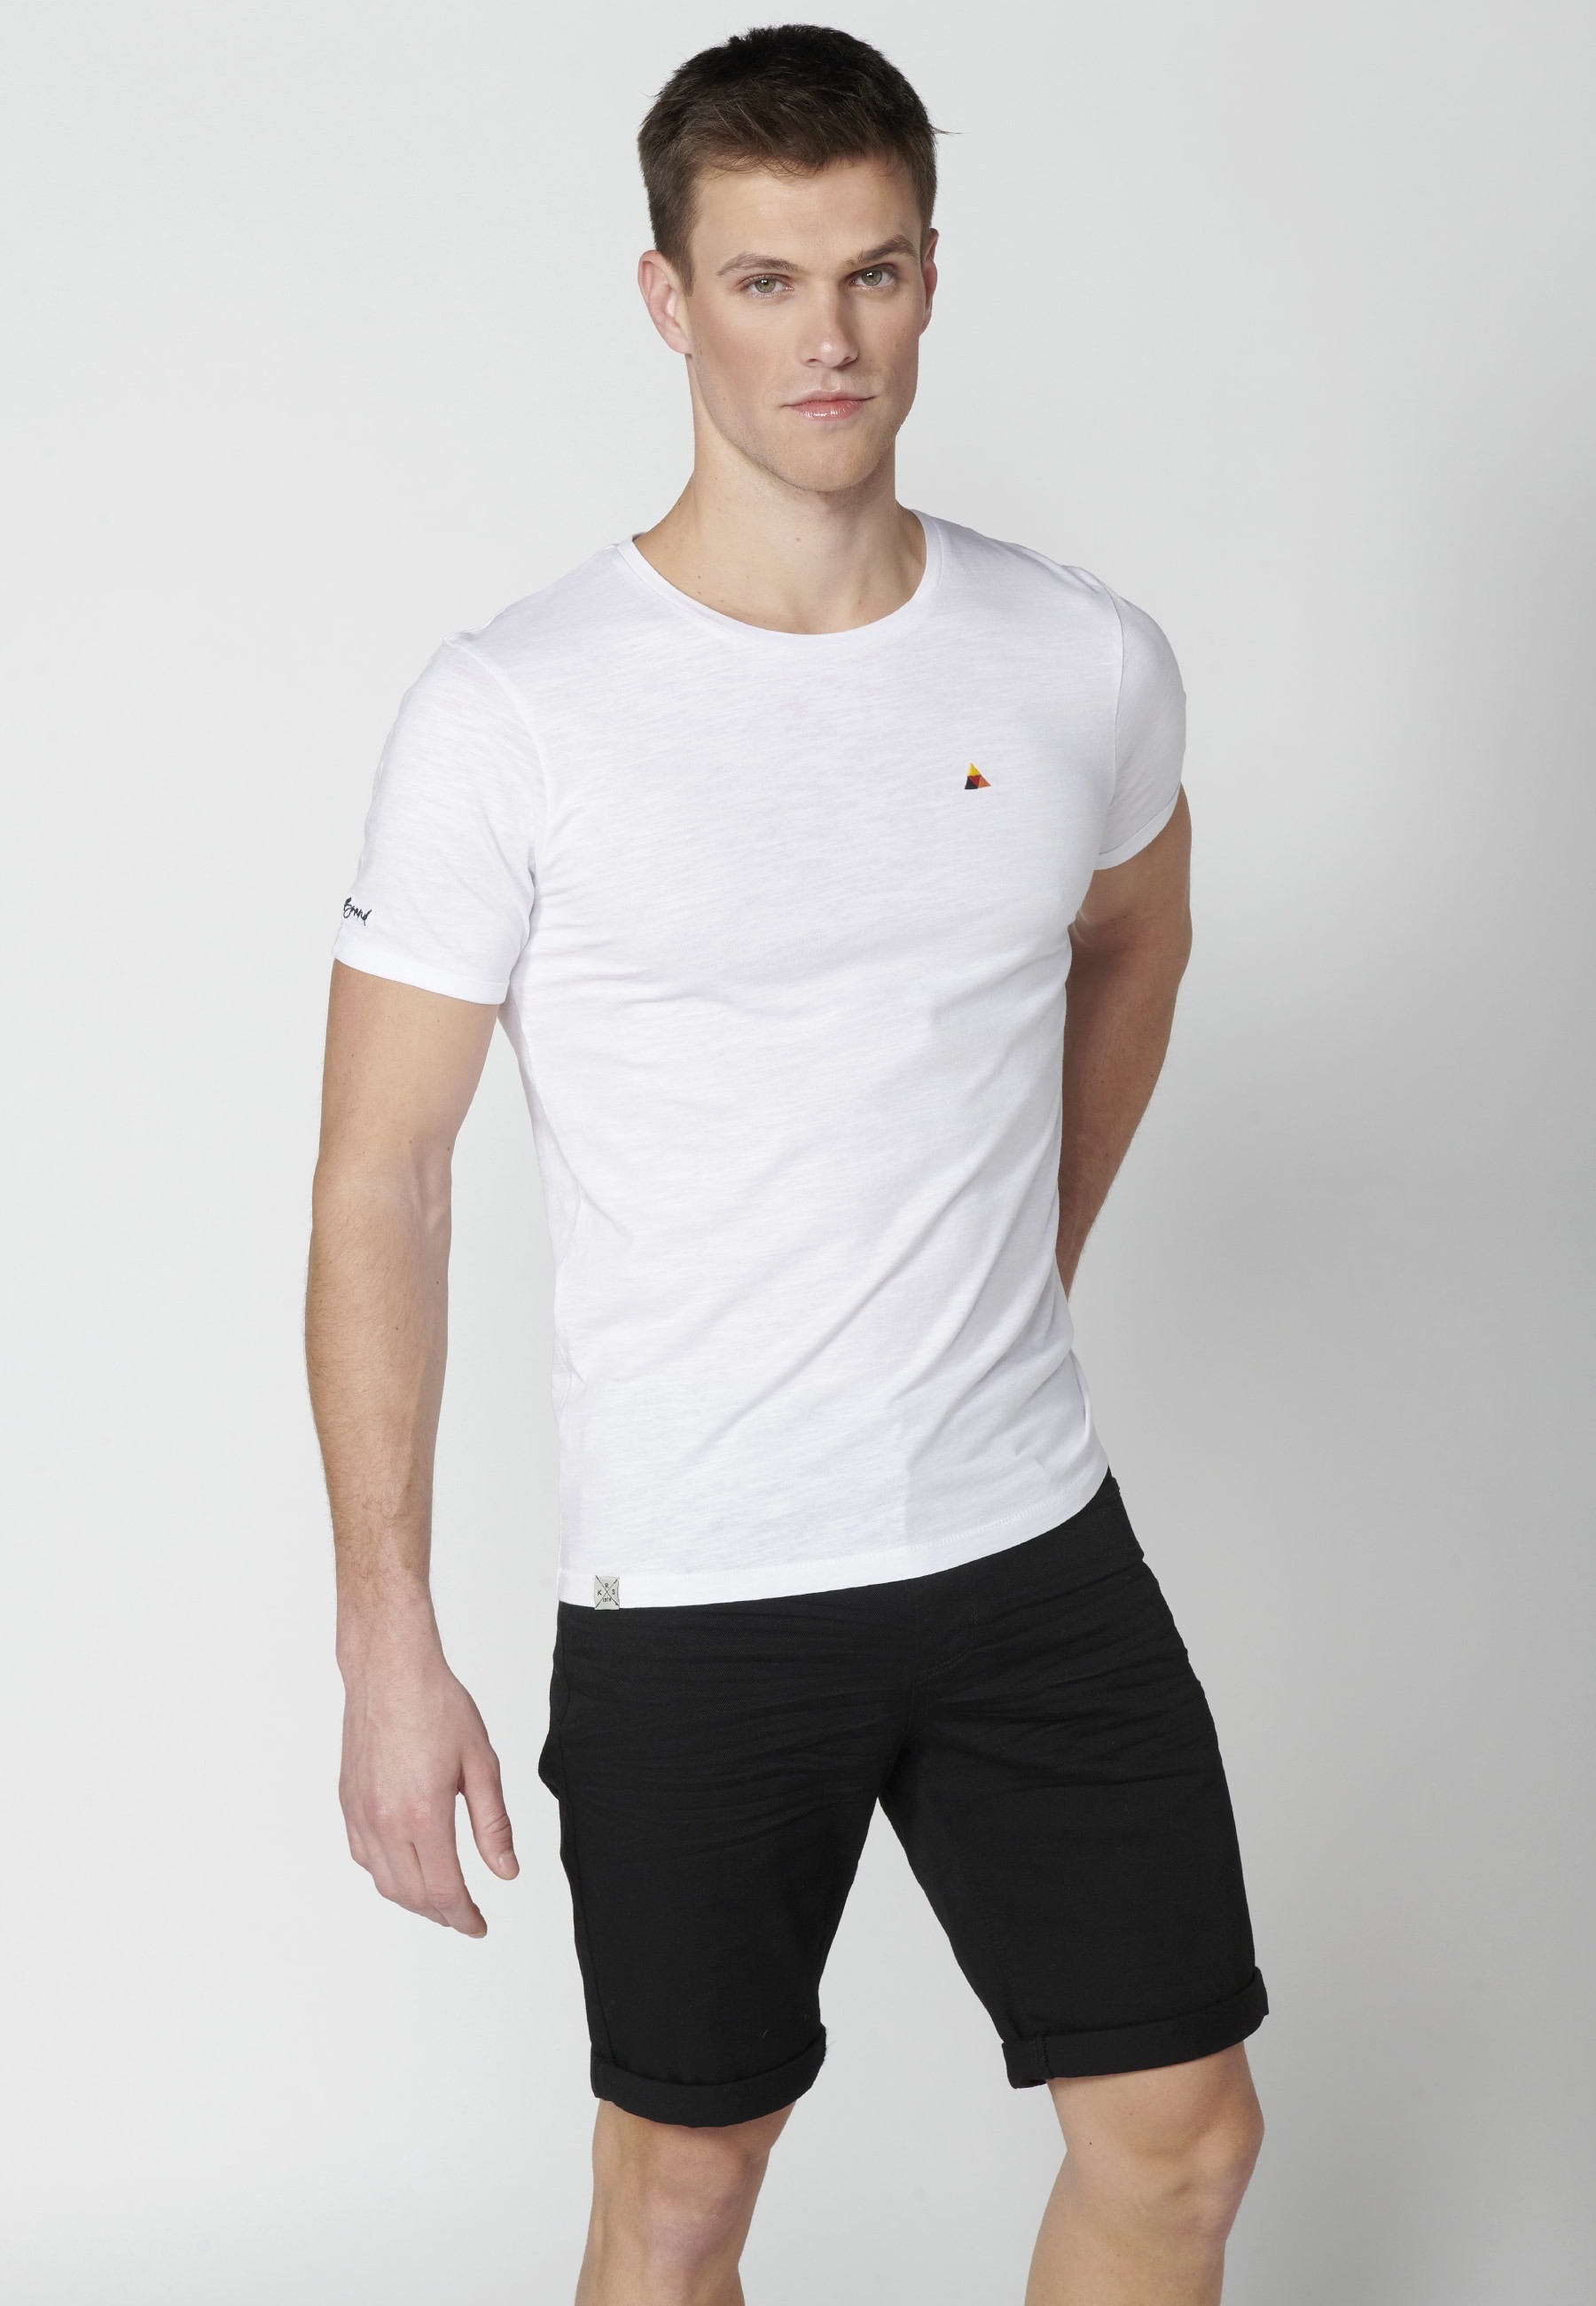 White cotton short-sleeved T-shirt for Men